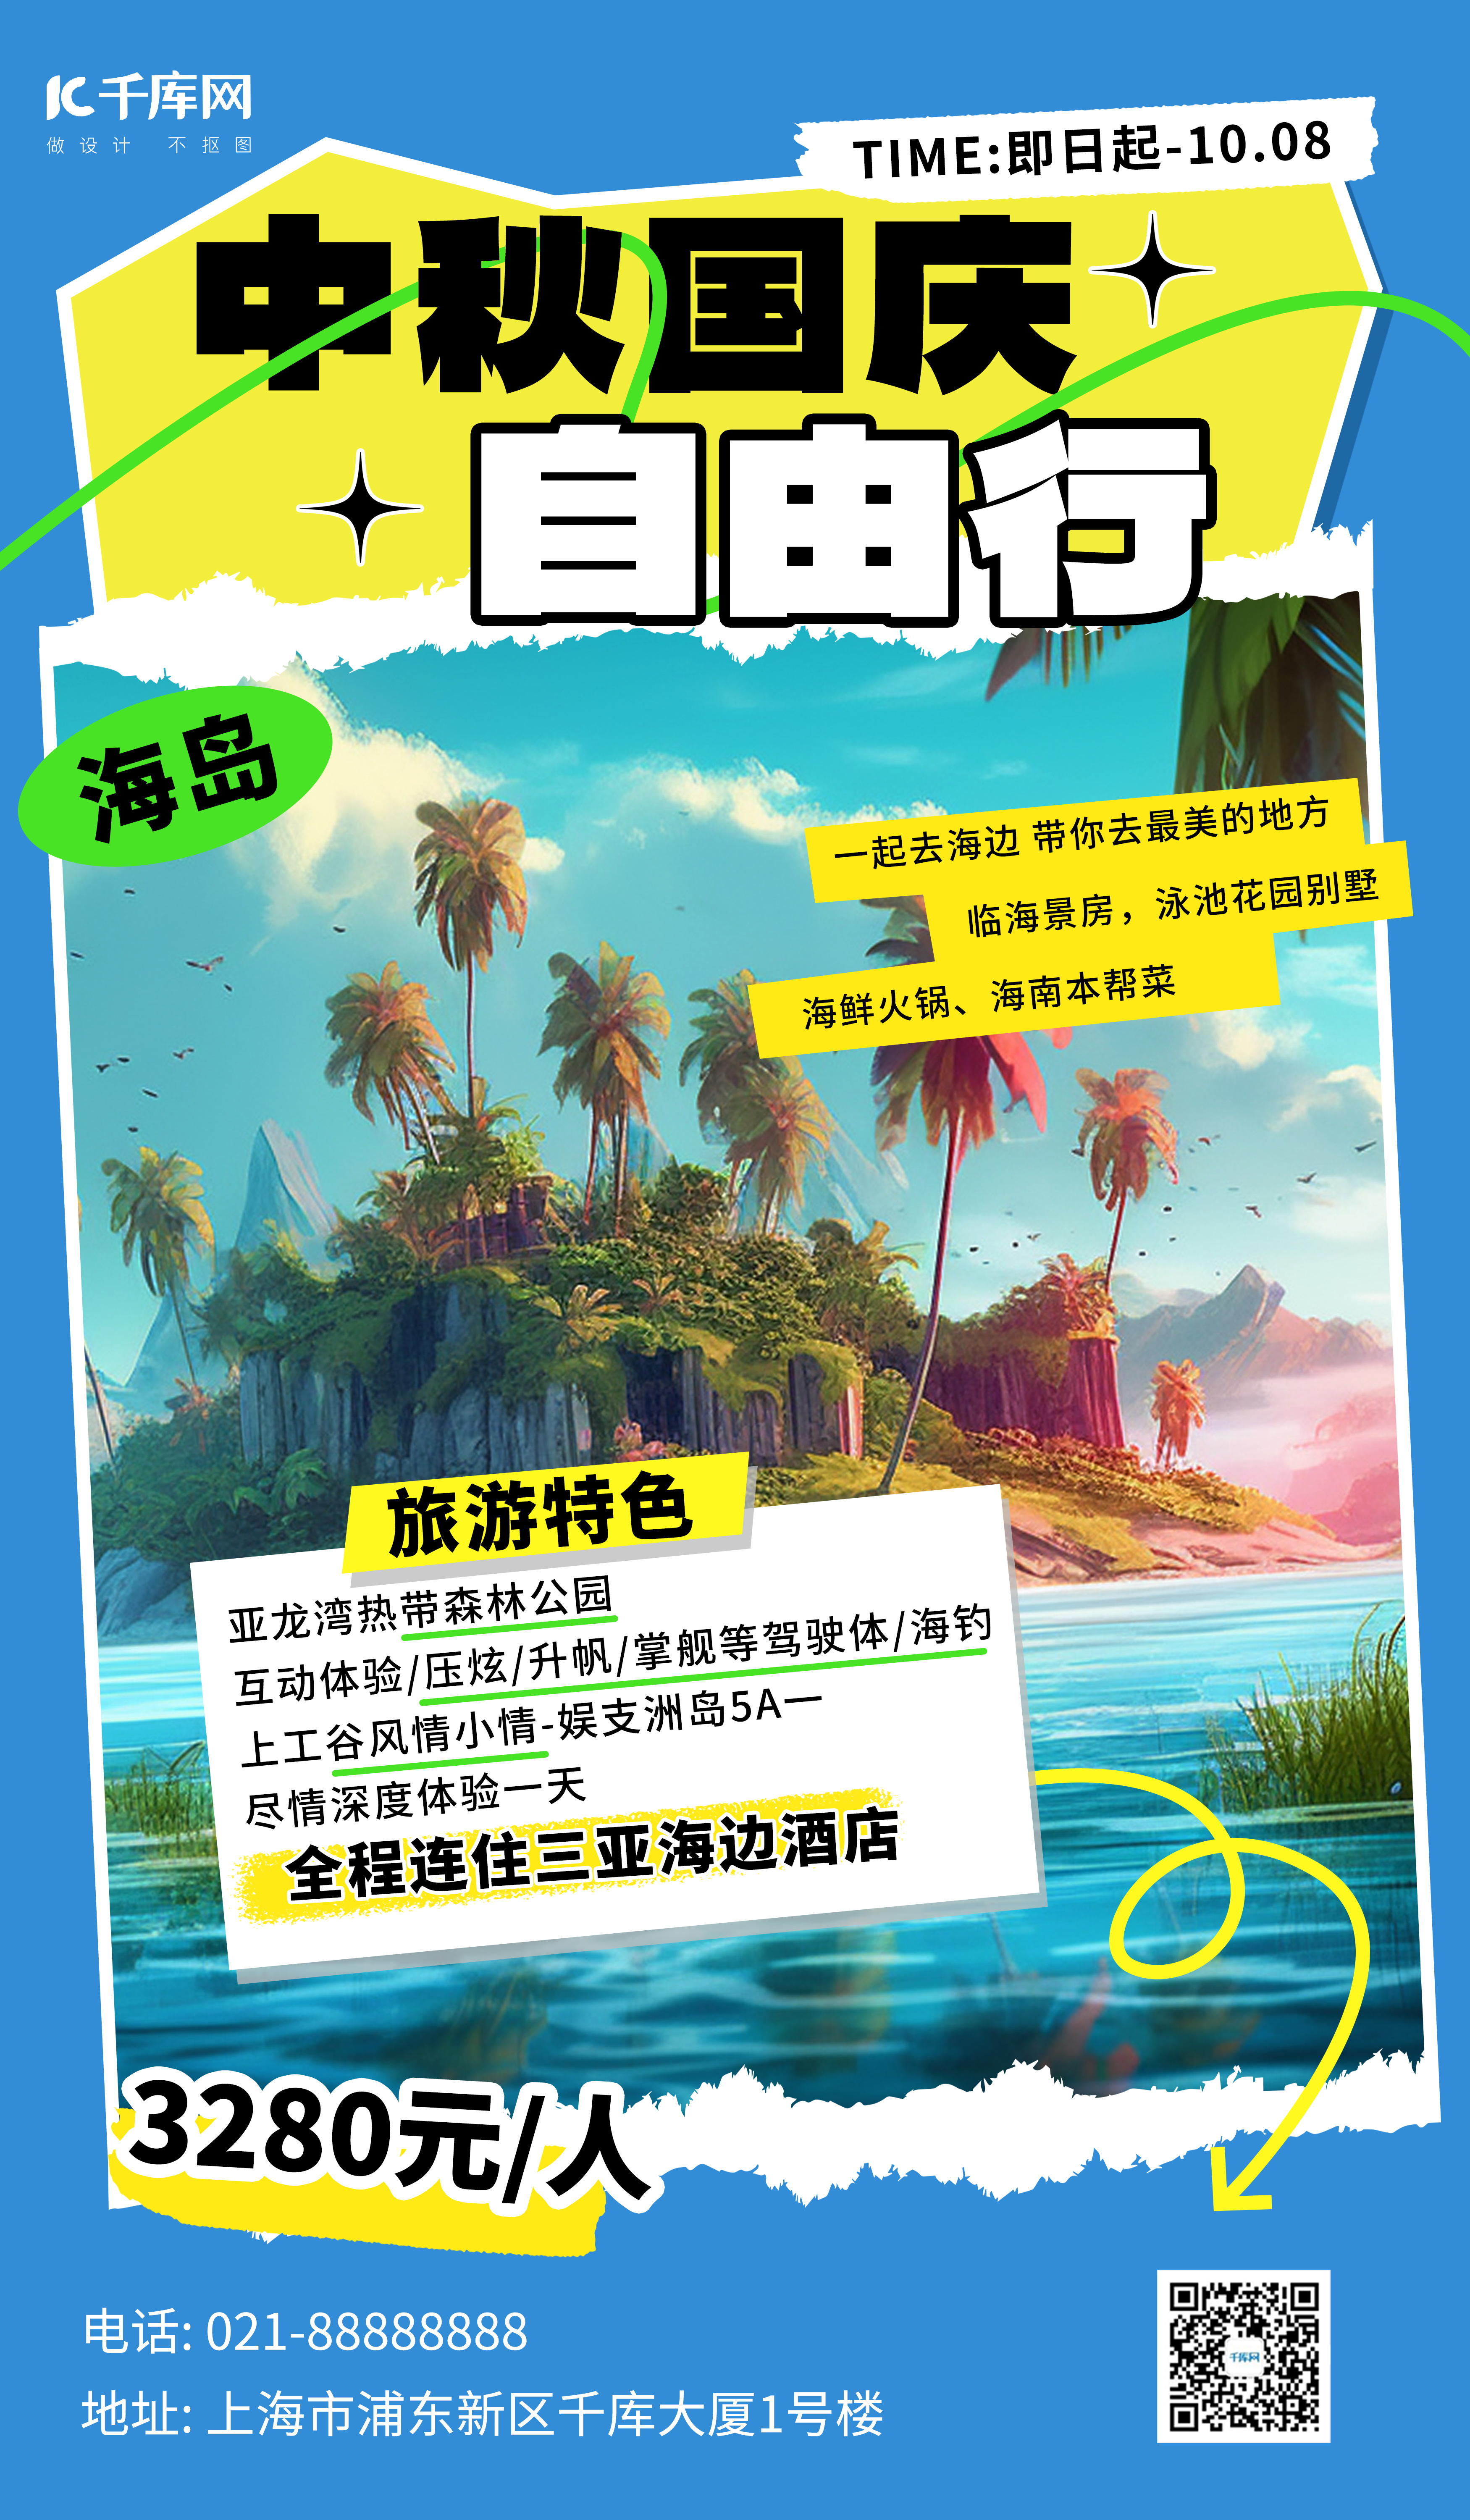 中秋国庆旅游海岛景区蓝色小红书风AI广告宣传海报图片